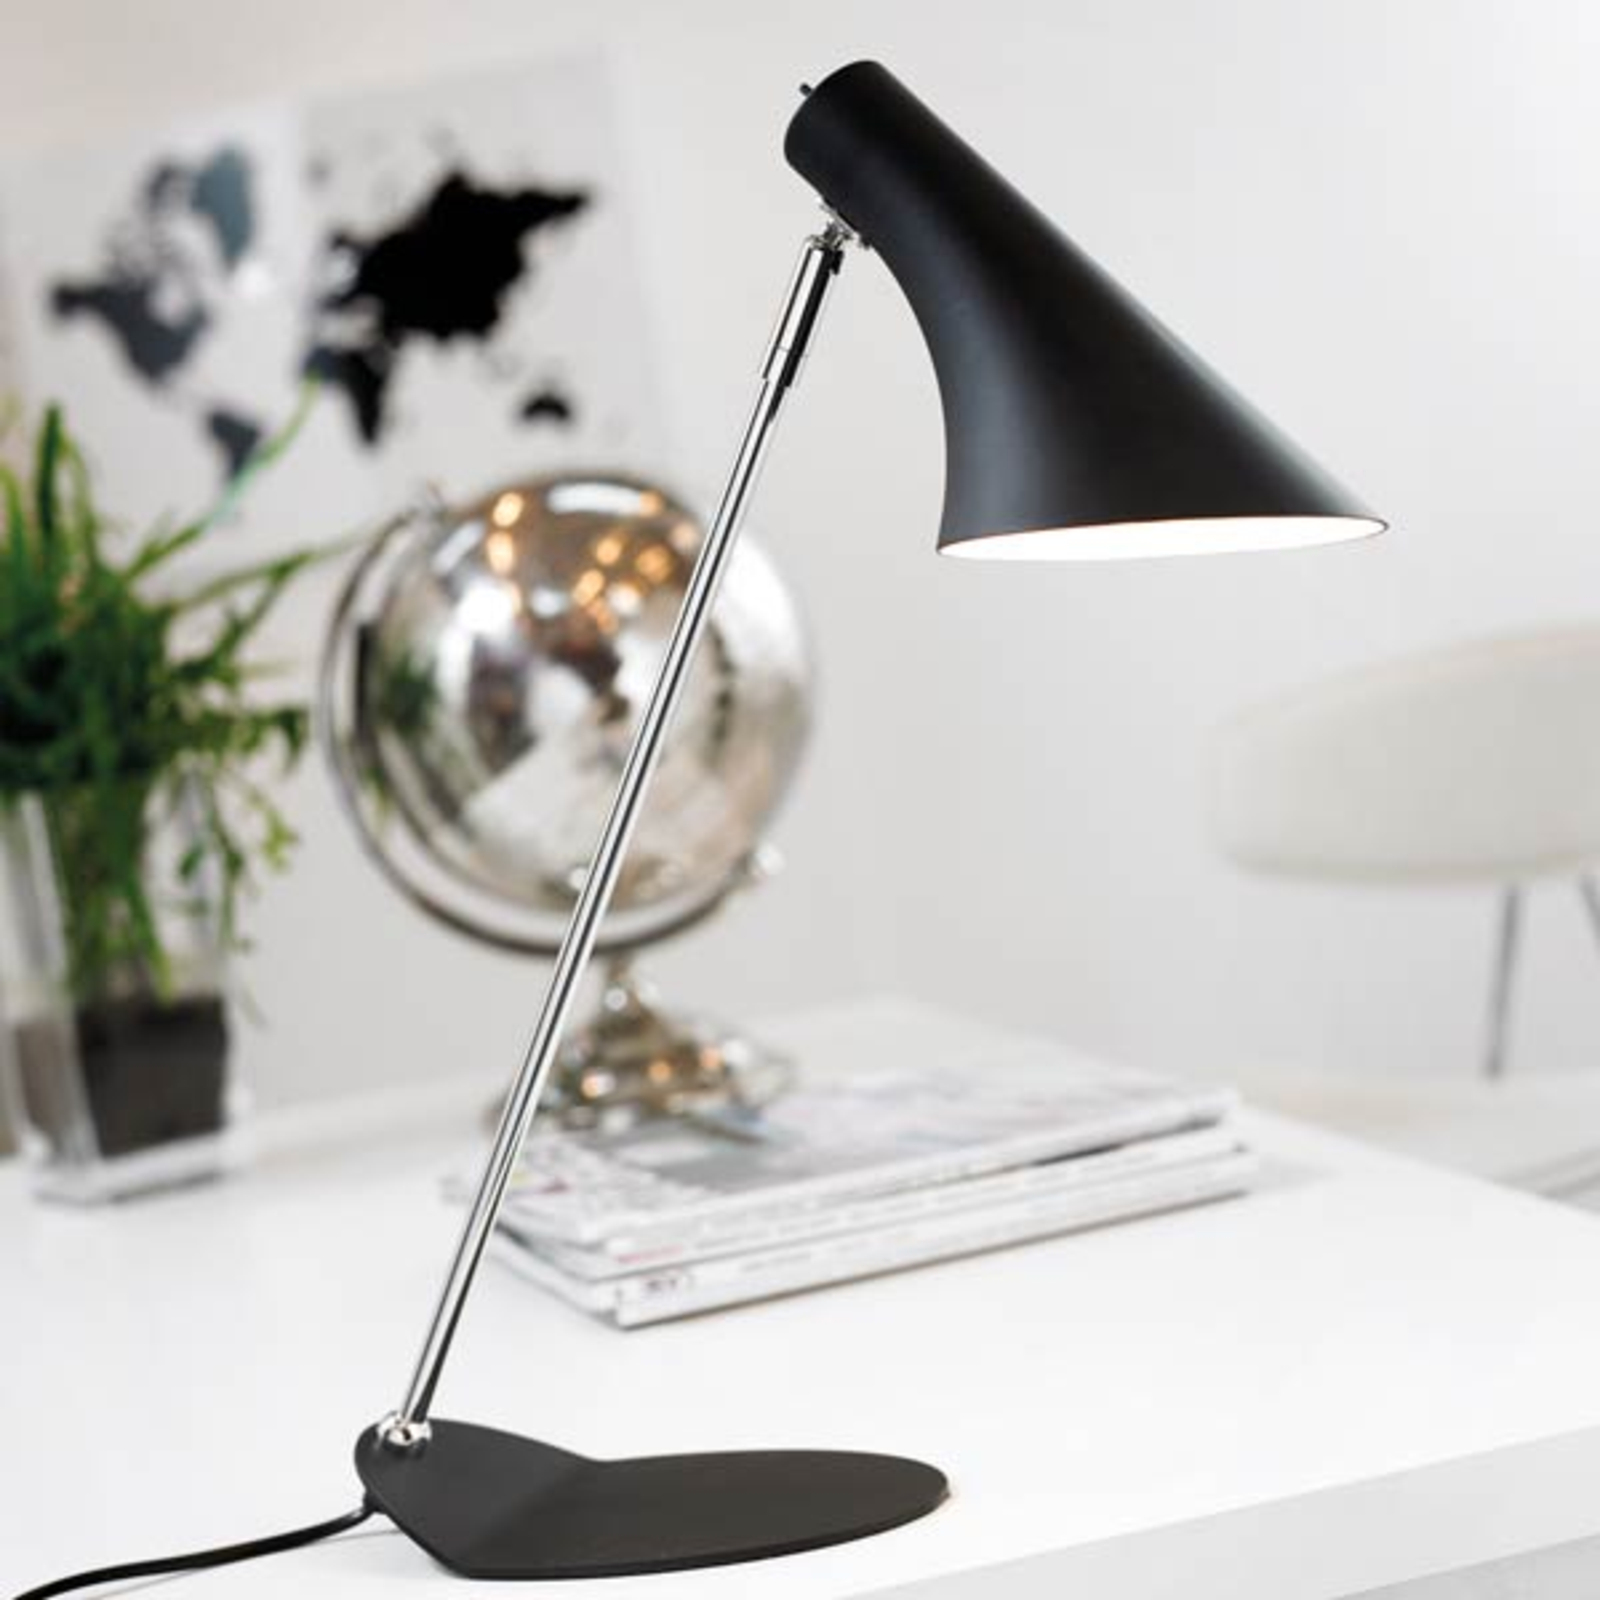 Vanilla table lamp, adjustable, black